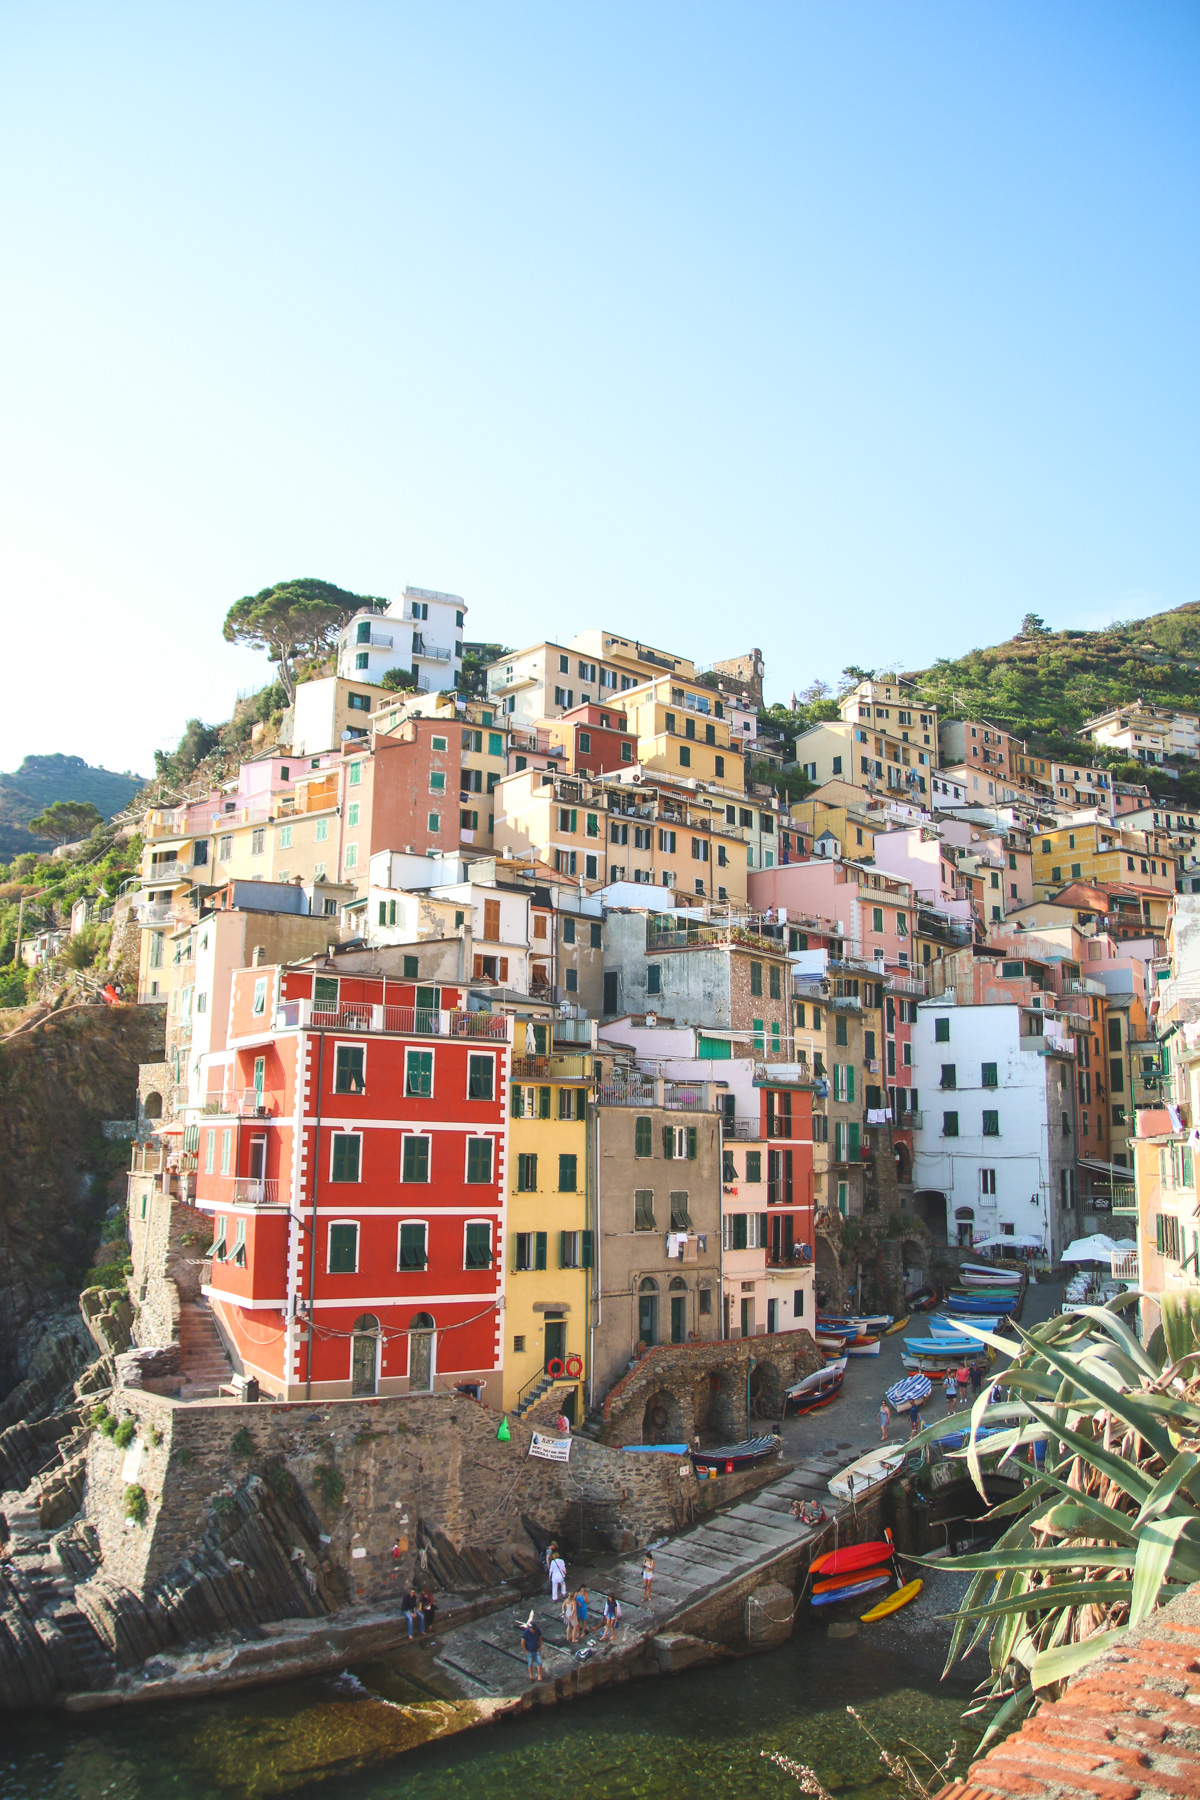 The Colourful Buildings of Riomaggiore in Cinque Terre, Ligurai Region, Italy